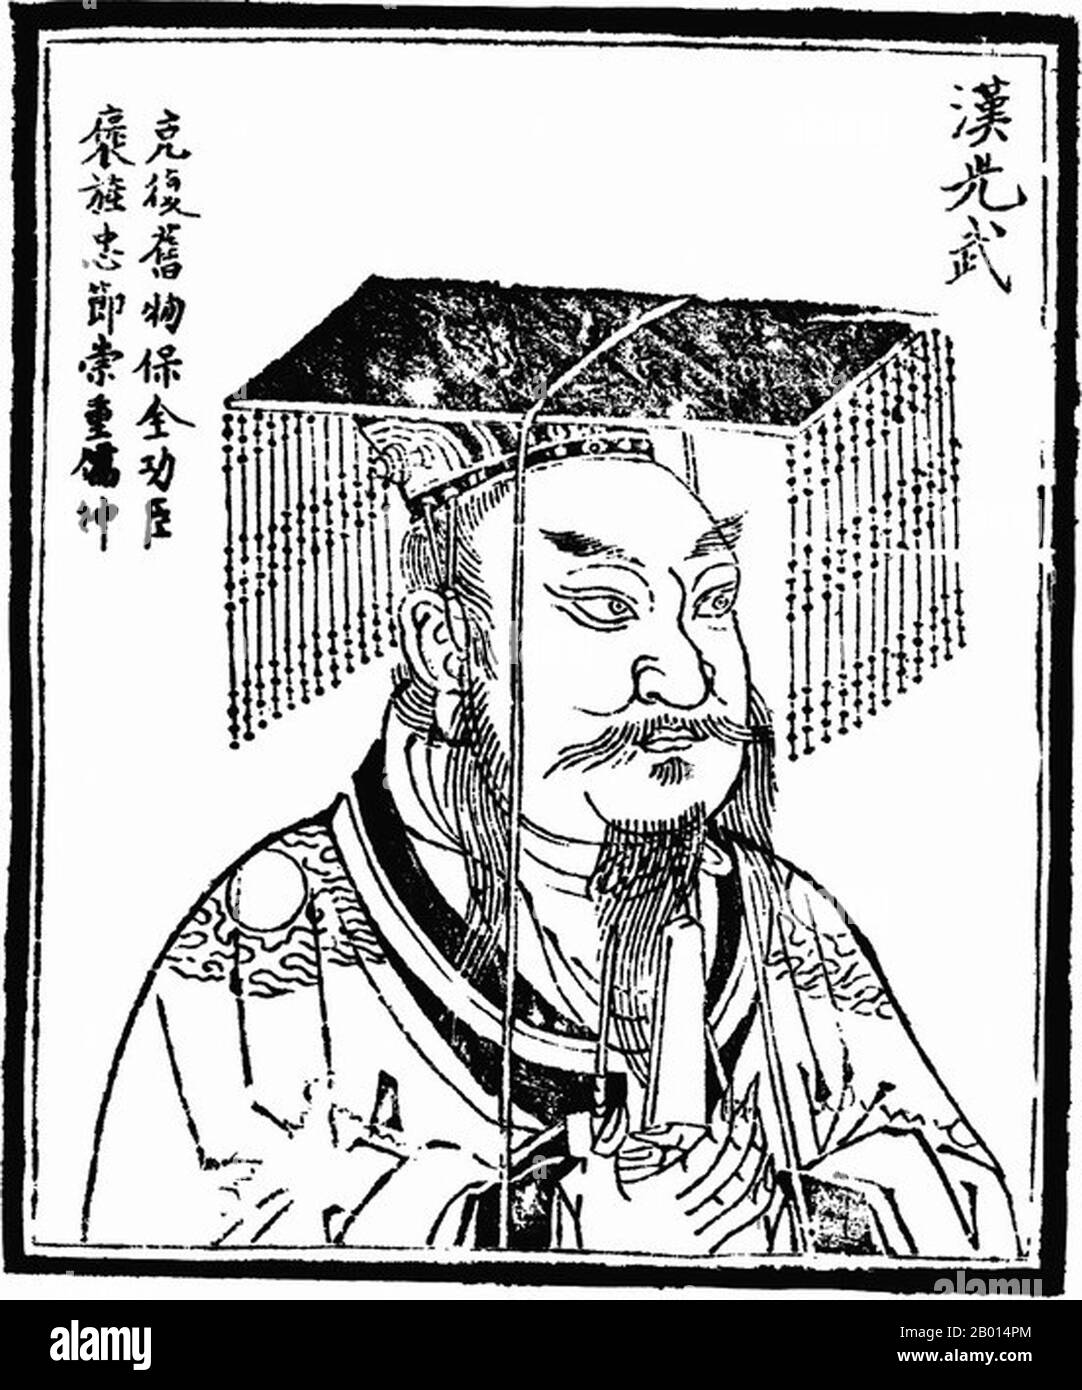 China: Emperador Guangwu (15 de enero de 5 aC - 29 de marzo de 57 aC), fundador y primer emperador de la Dinastía Han Oriental (r. 5 de agosto de 25 - 29 de marzo de 57 CE). Ilustración, c. 1498. El emperador Guangwu, nacido Liu Xiu y nombre de cortesía Wenshu, fue un emperador de la dinastía Han, restaurando la dinastía en 25 EC y así fue fundador de la más reciente dinastía Han o del este de Han. Inicialmente gobernó parte de China, pero a través de la supresión y conquista de los caudillos regionales, toda China se consolidó en el momento de su muerte. Era un brillante estratega, y era conocido por su decisión y misericordia. Foto de stock